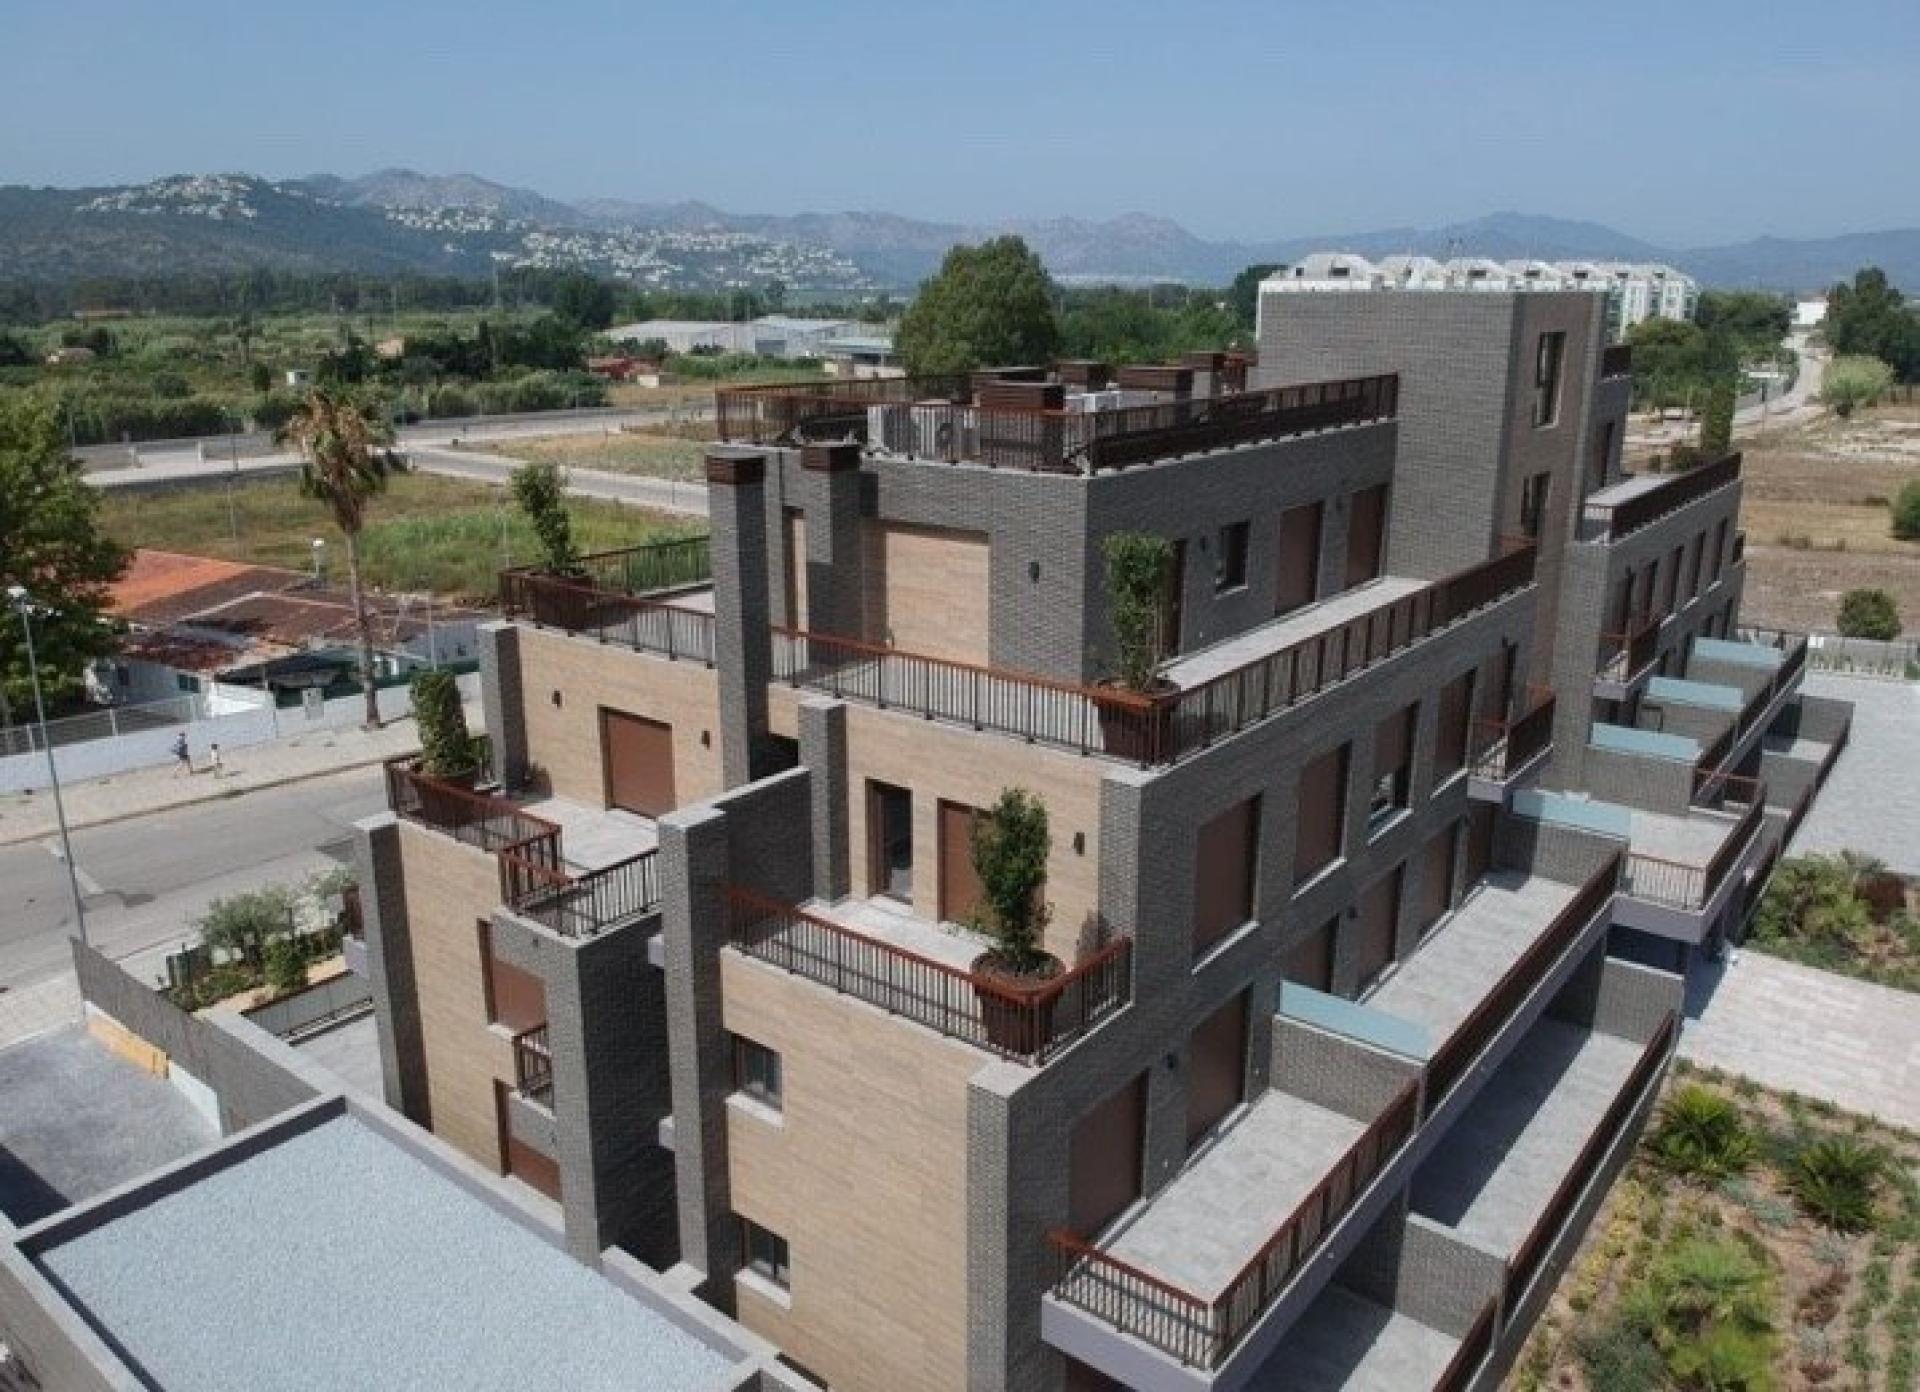 1 slaapkamer Appartement met terras in Denia - Nieuwbouw in Medvilla Spanje